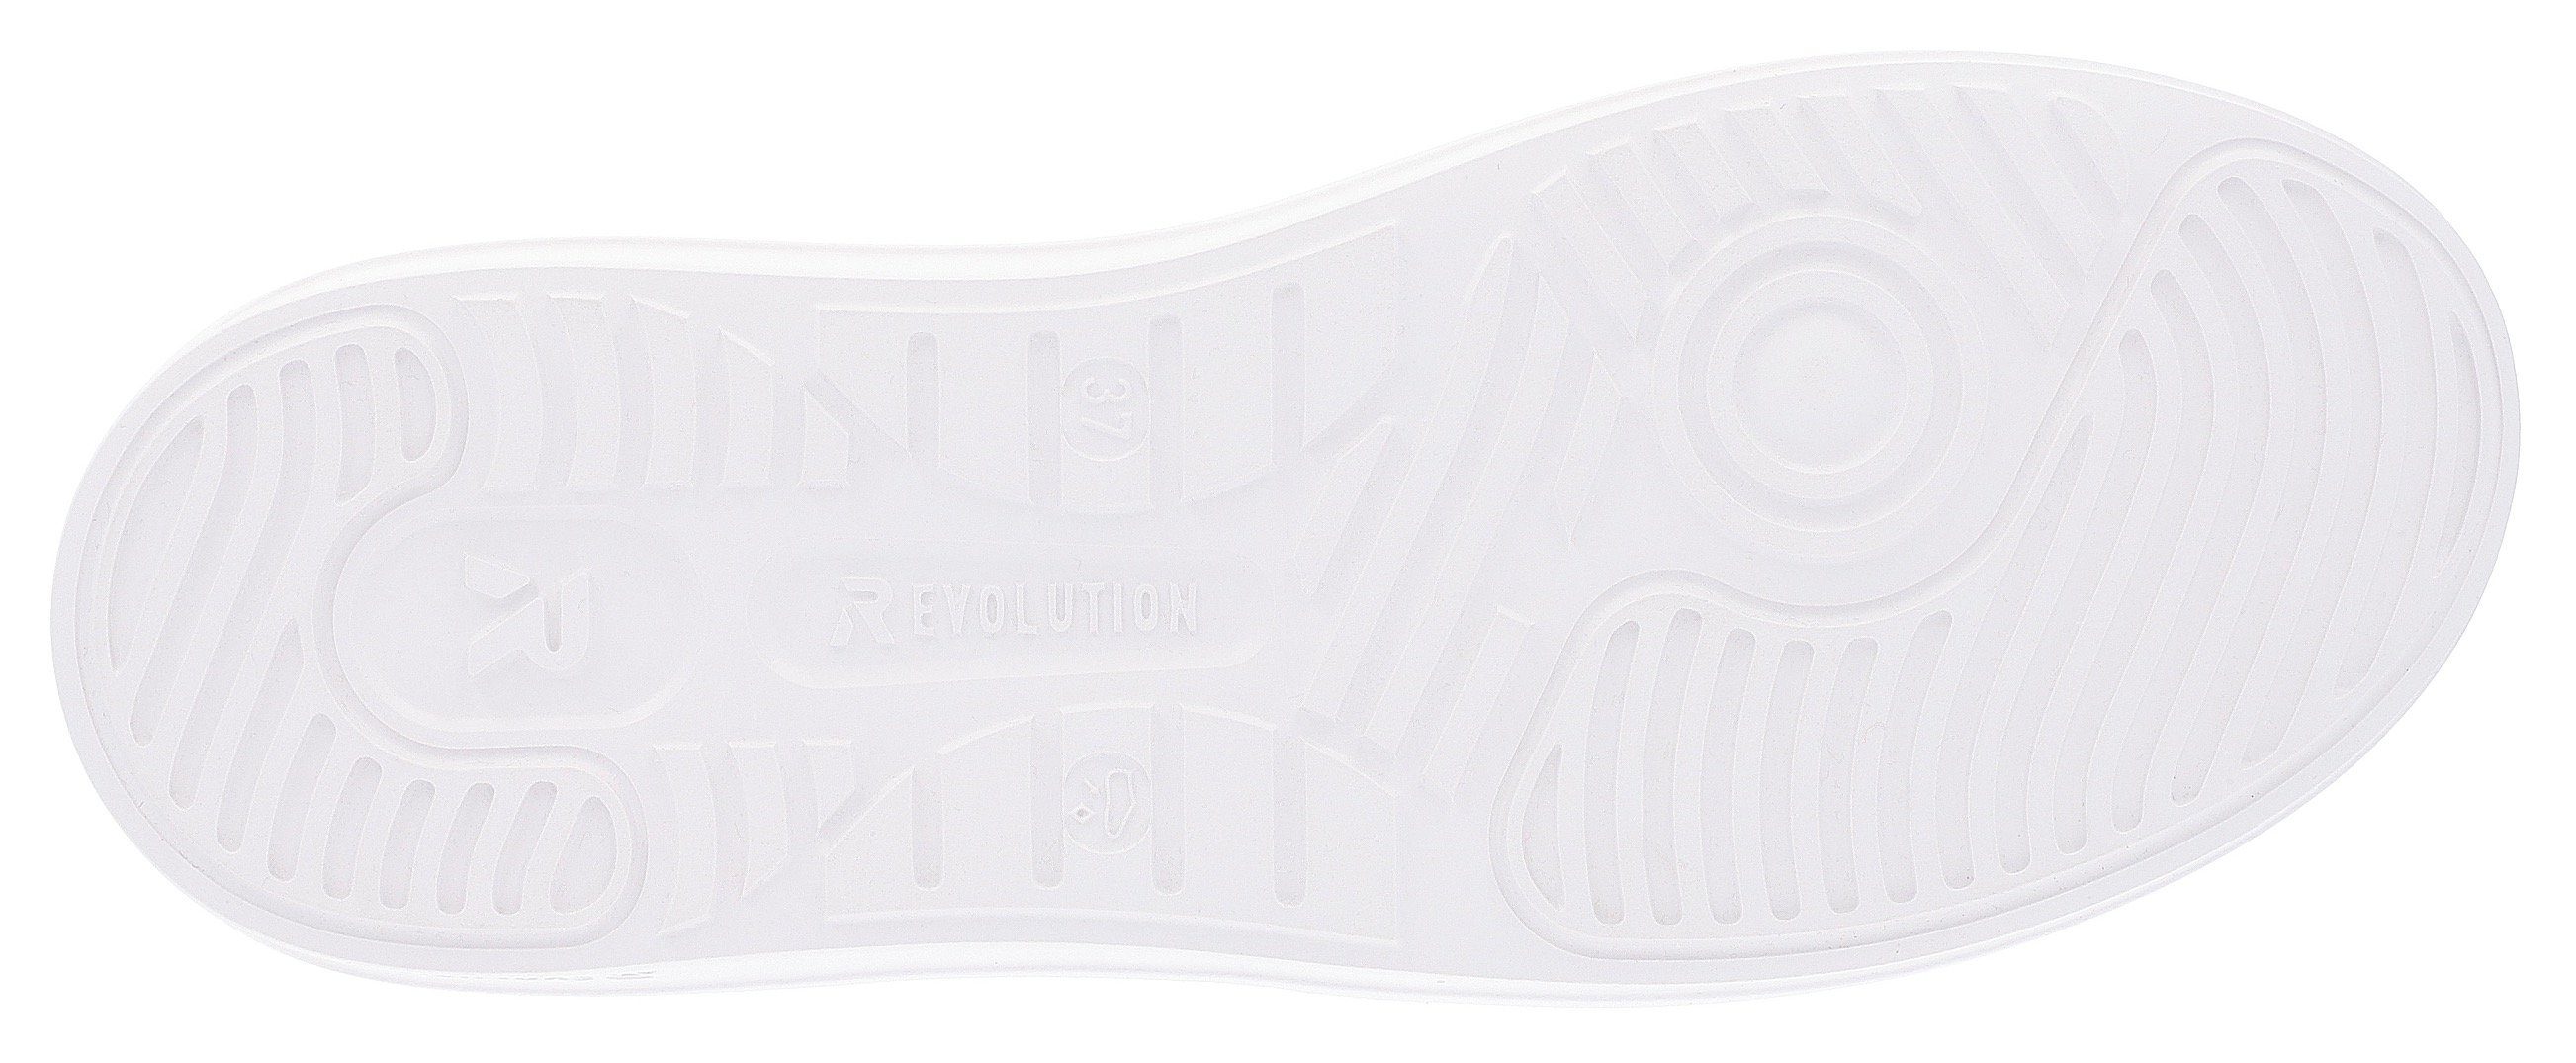 Rieker Metallic-Details Plateausneaker mit weiß-hellbeige-Schmucklibelle EVOLUTION stylischen